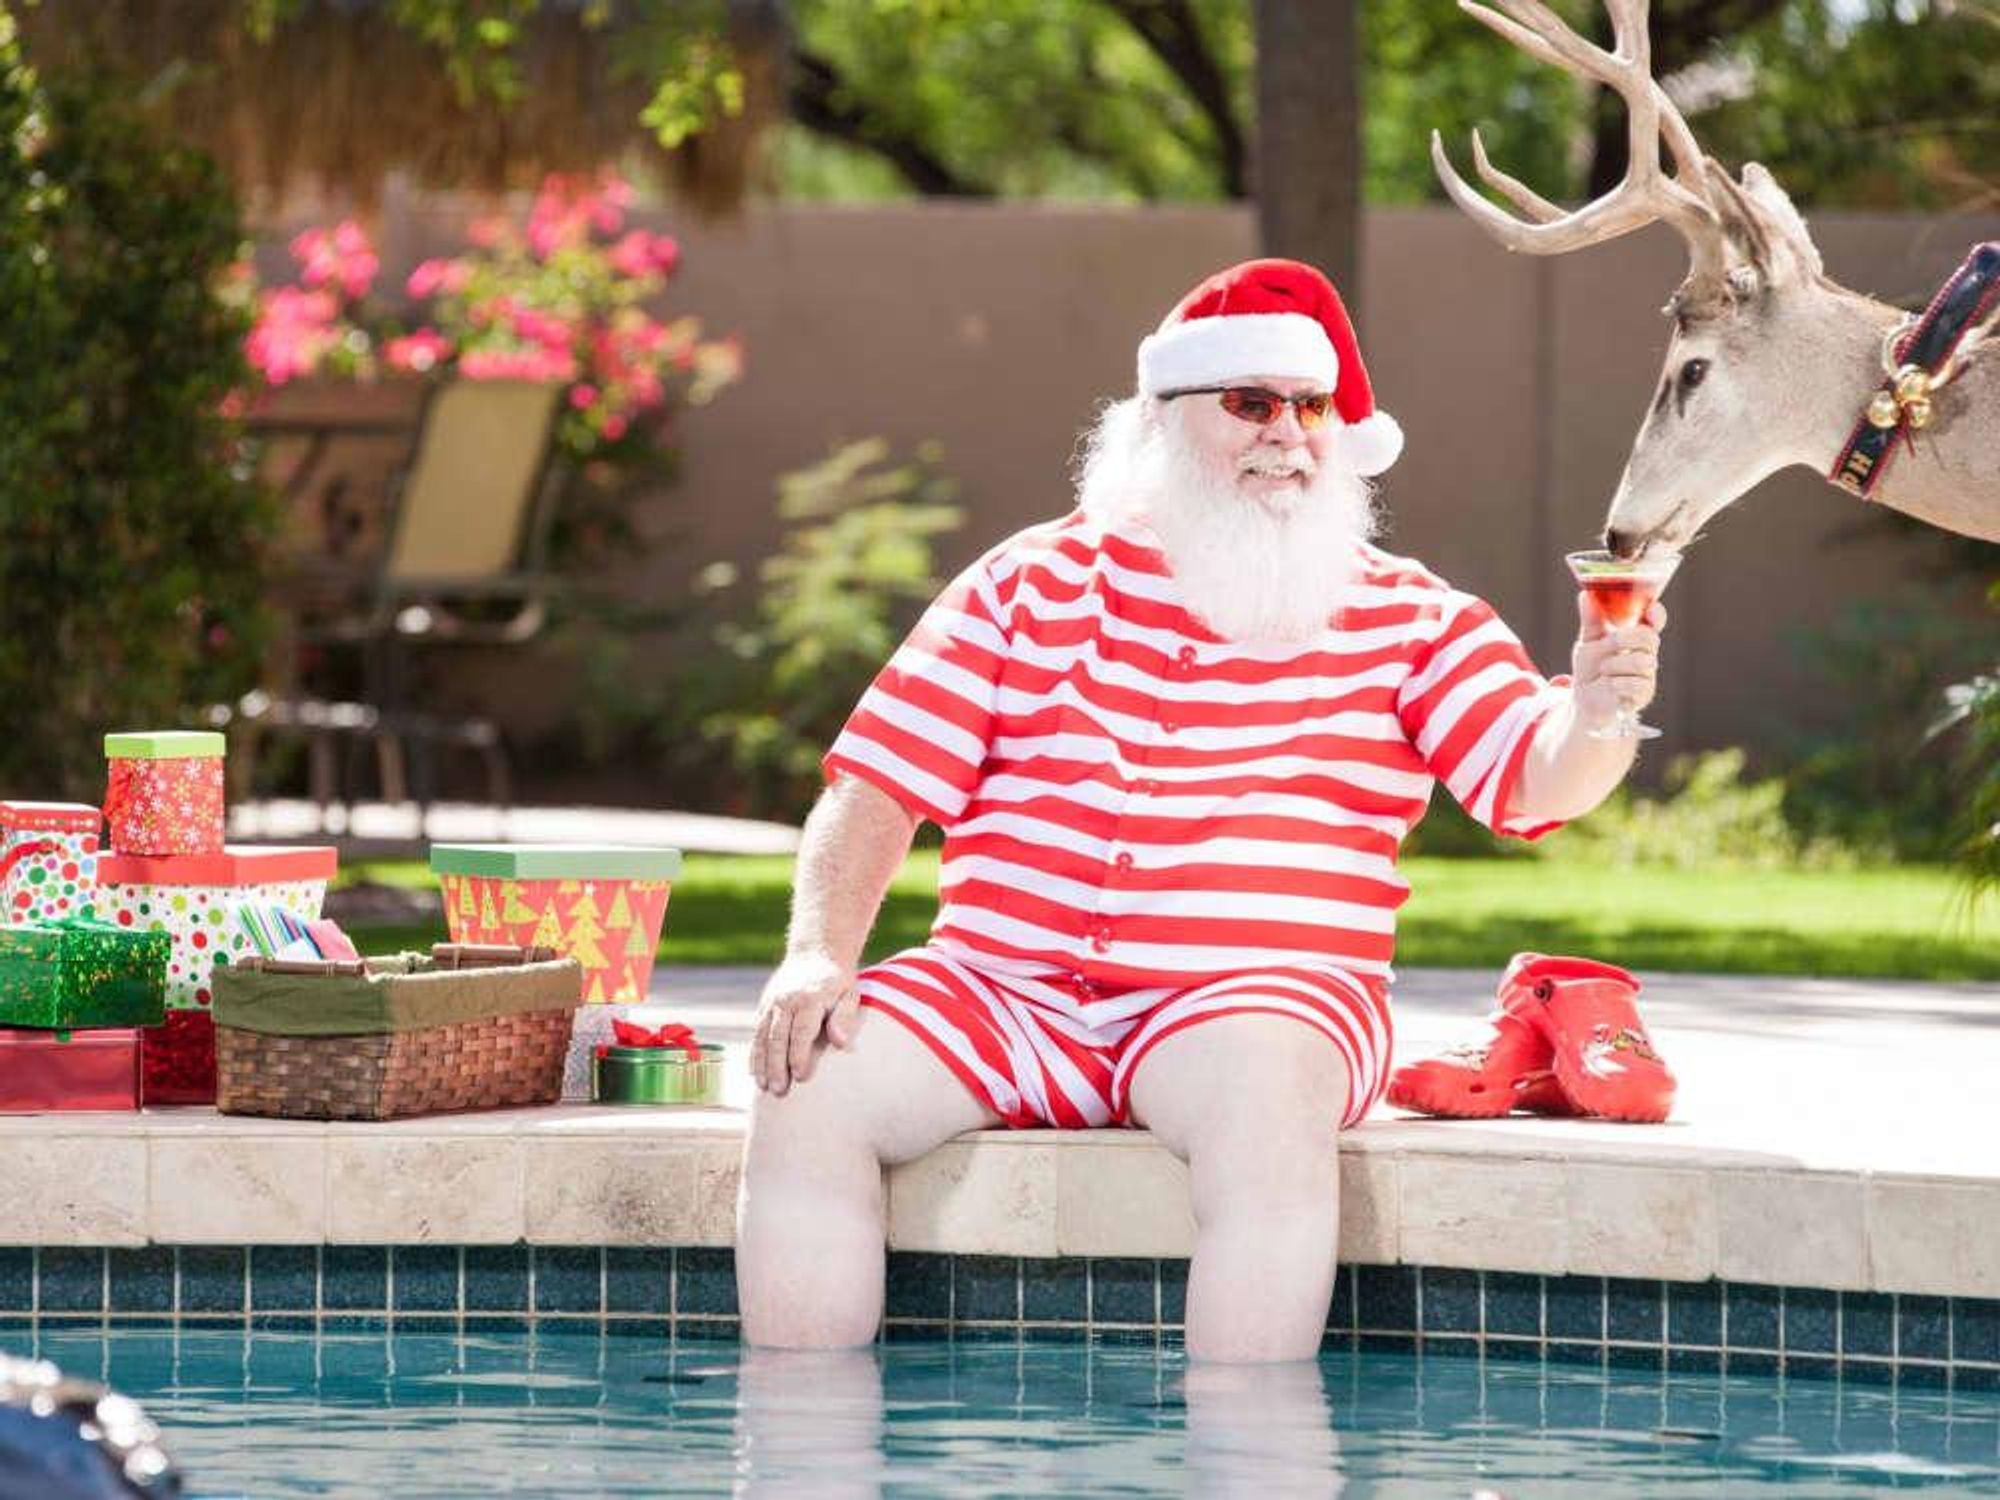 Christmas in July, Santa summer, pool, reindeer